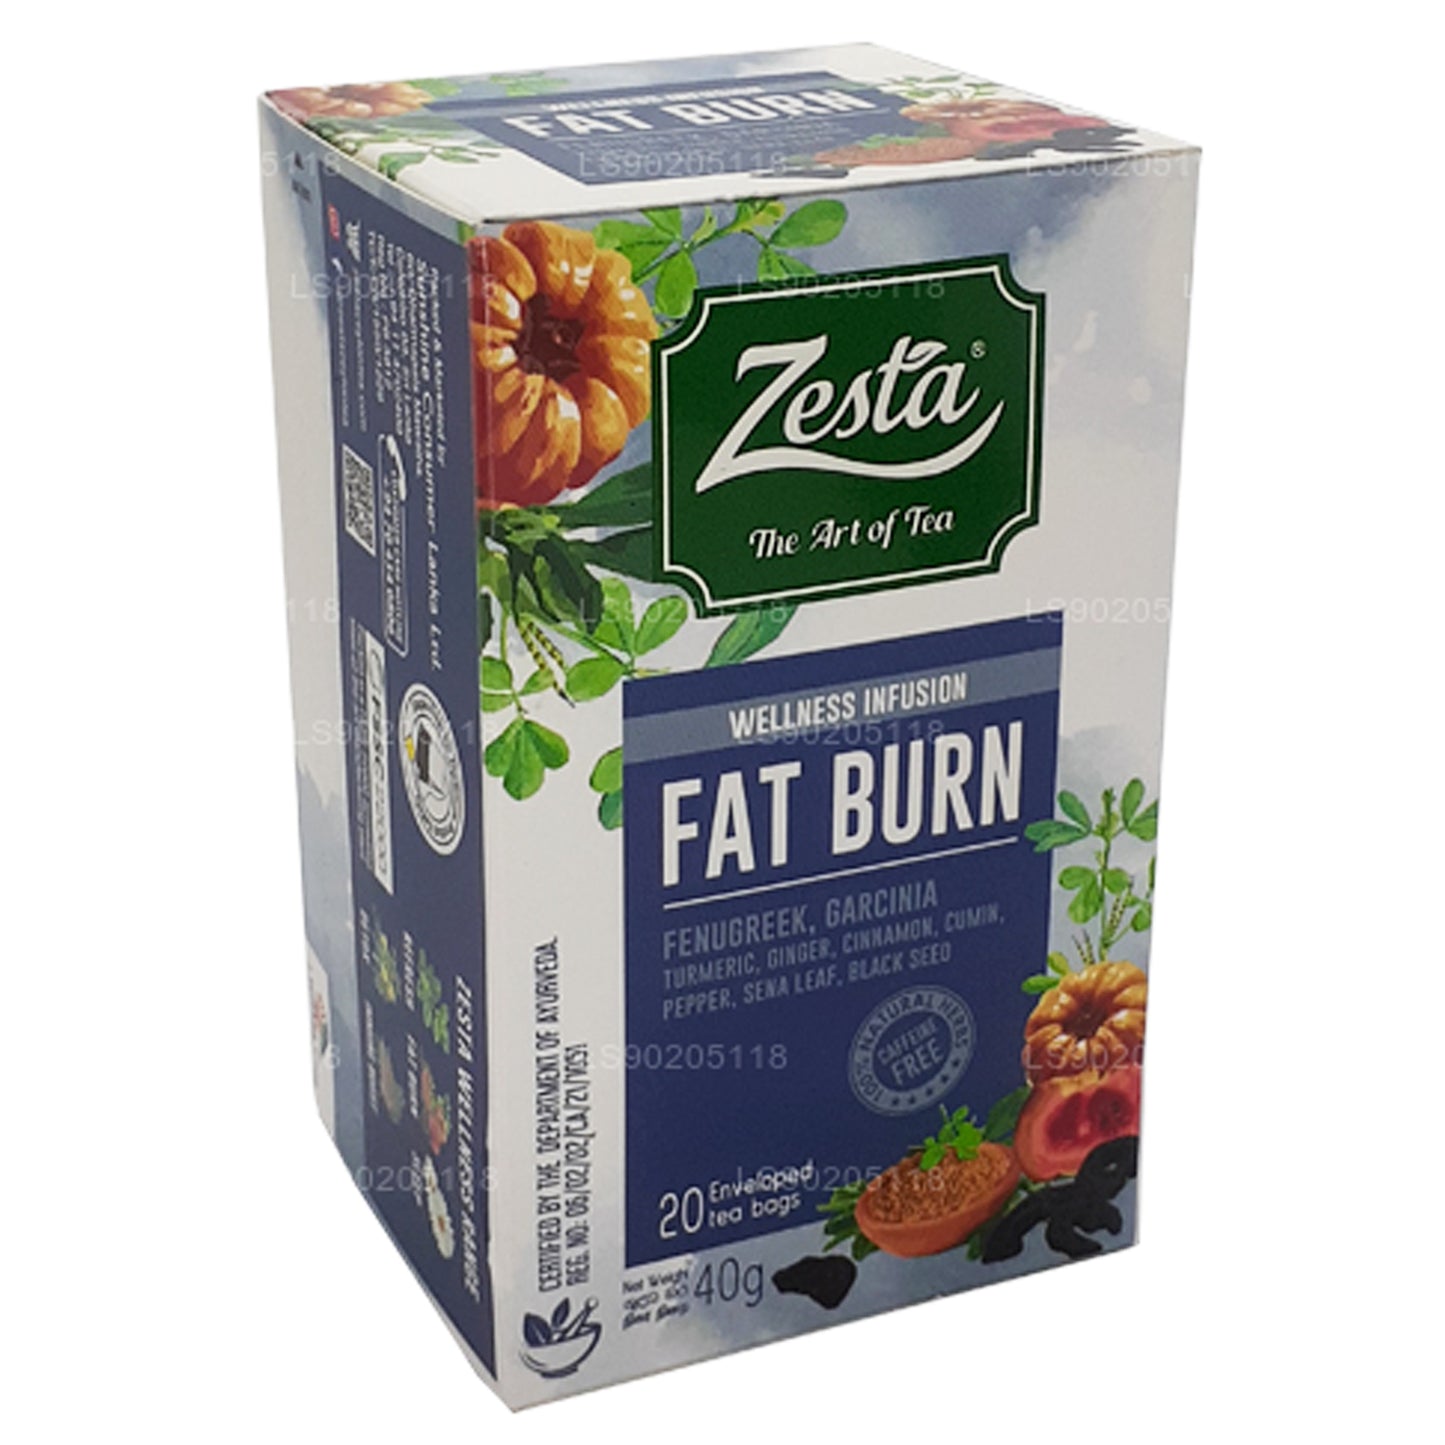 Zesta Fat Burn (40g) 20 Tea Bags